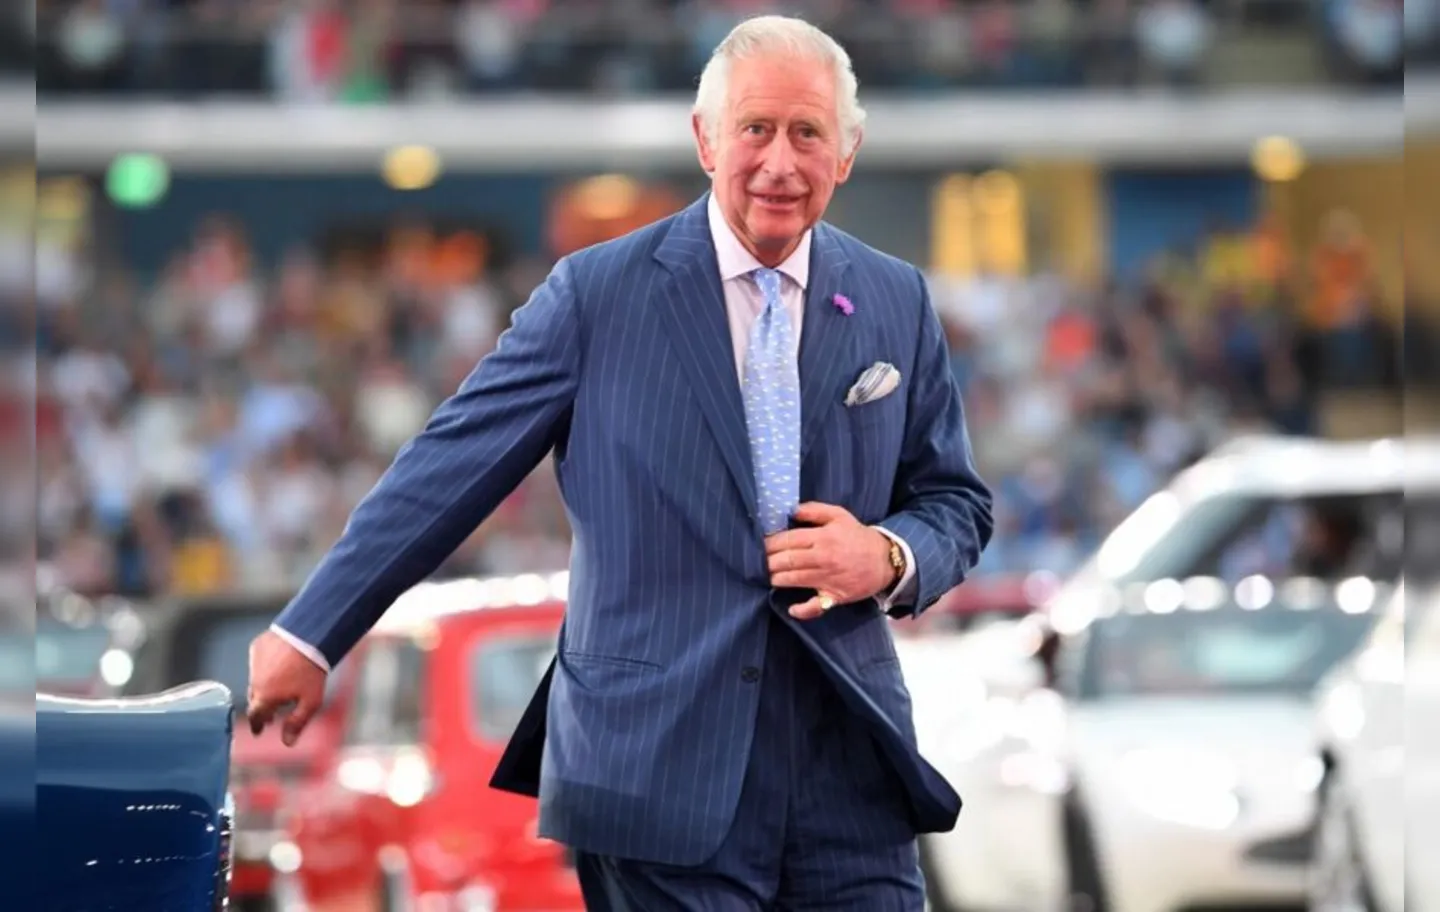 Príncipe Charles enfrenta suspeitas de concessão de títulos da realeza em troca de doações